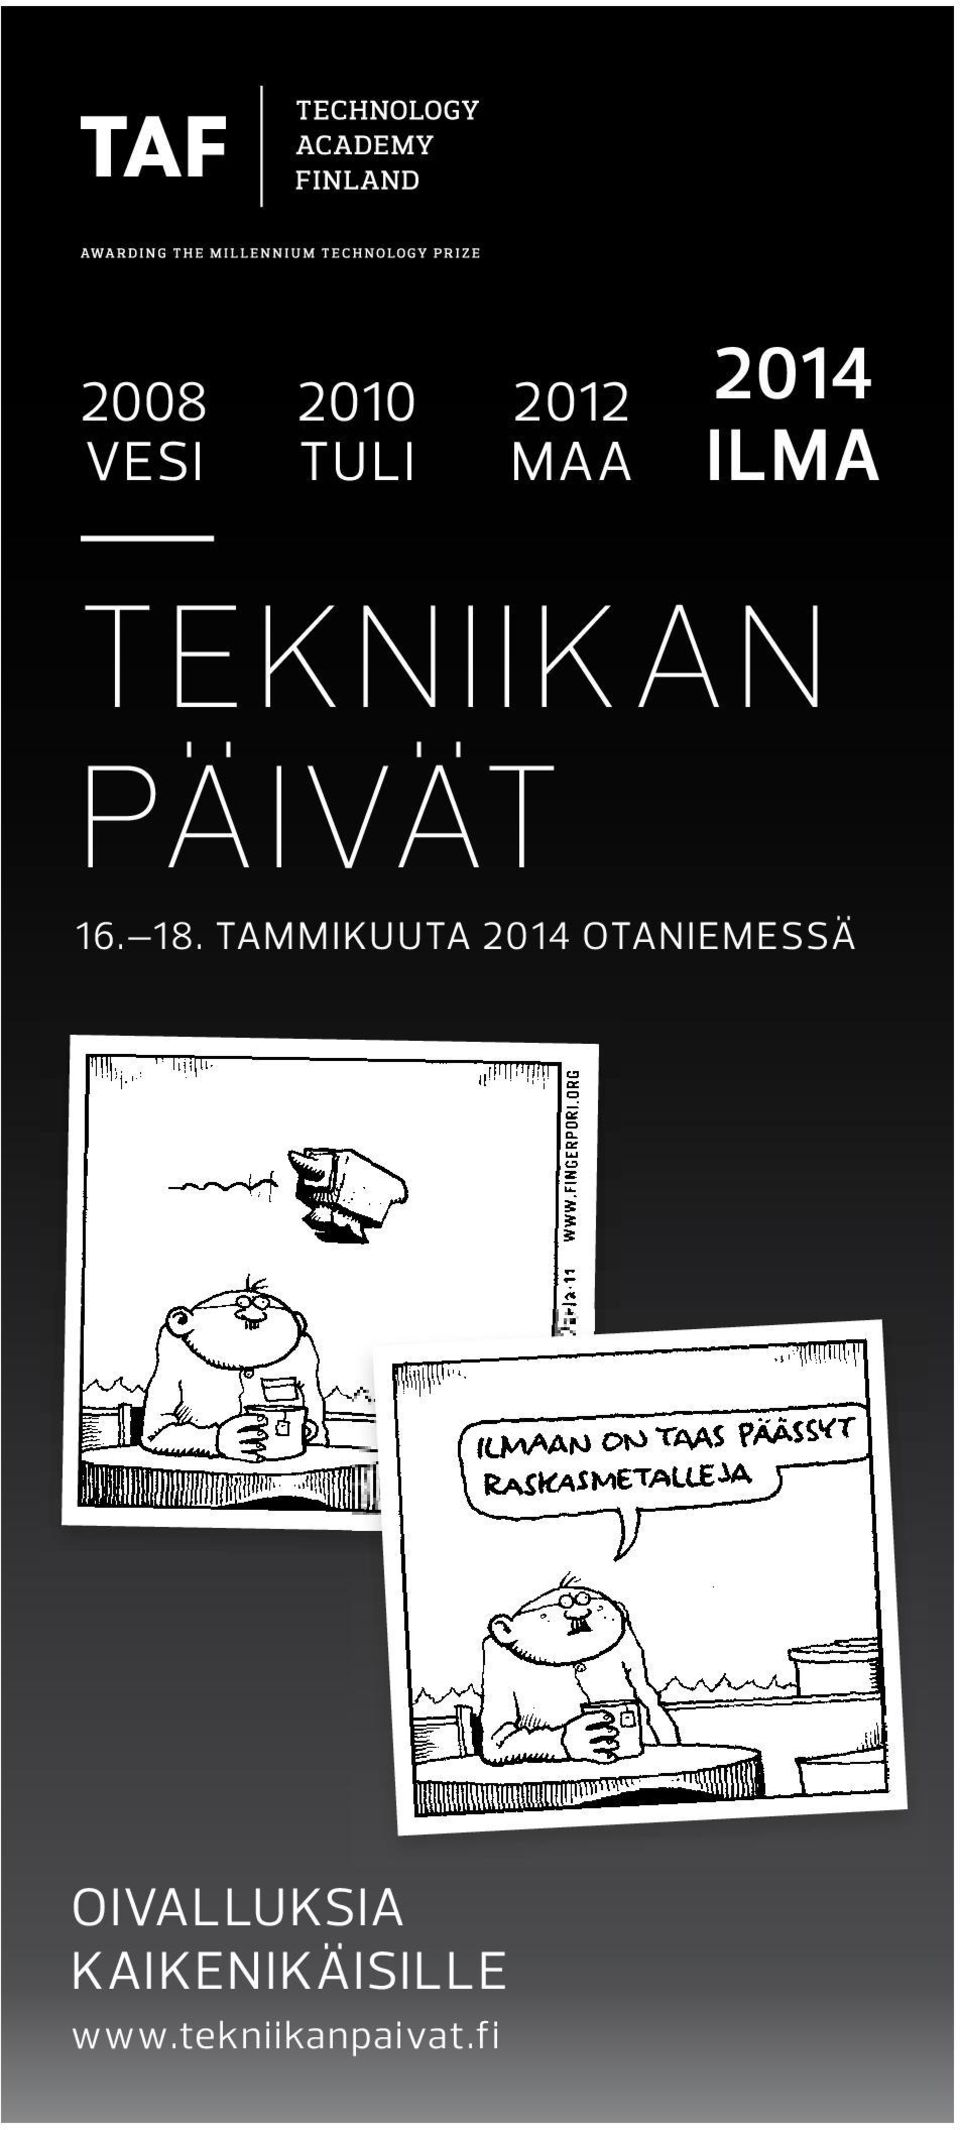 TAMMIKUUTA 2014 OTANIEMESSÄ